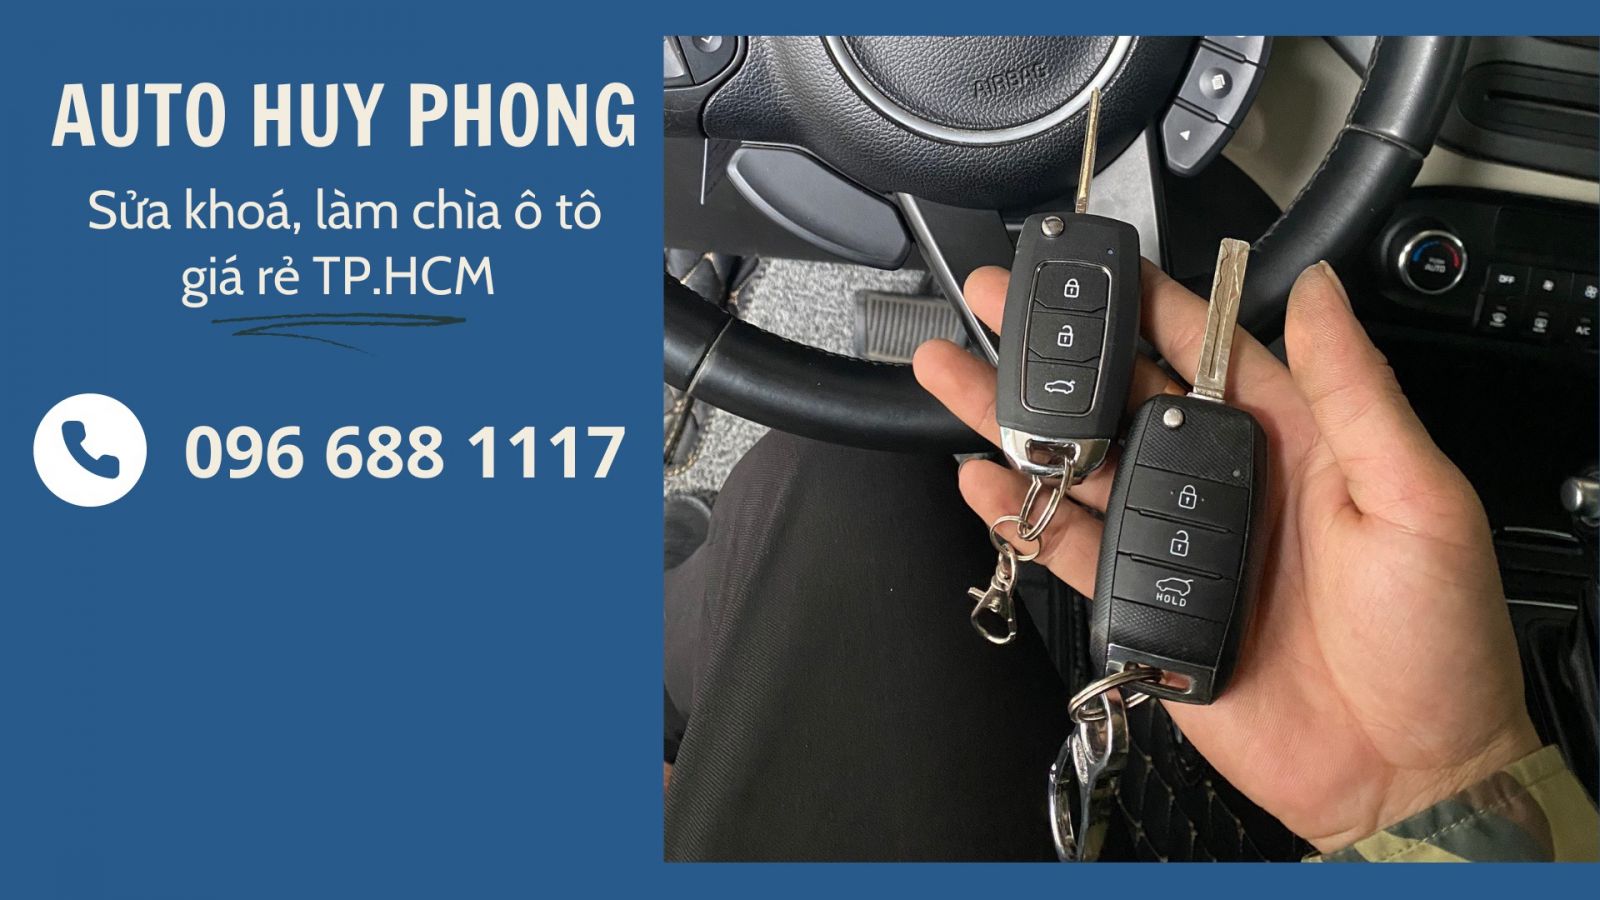 Hình 2: Auto Huy Phong - Sửa khóa, làm chìa ô tô giá rẻ TP.HCM